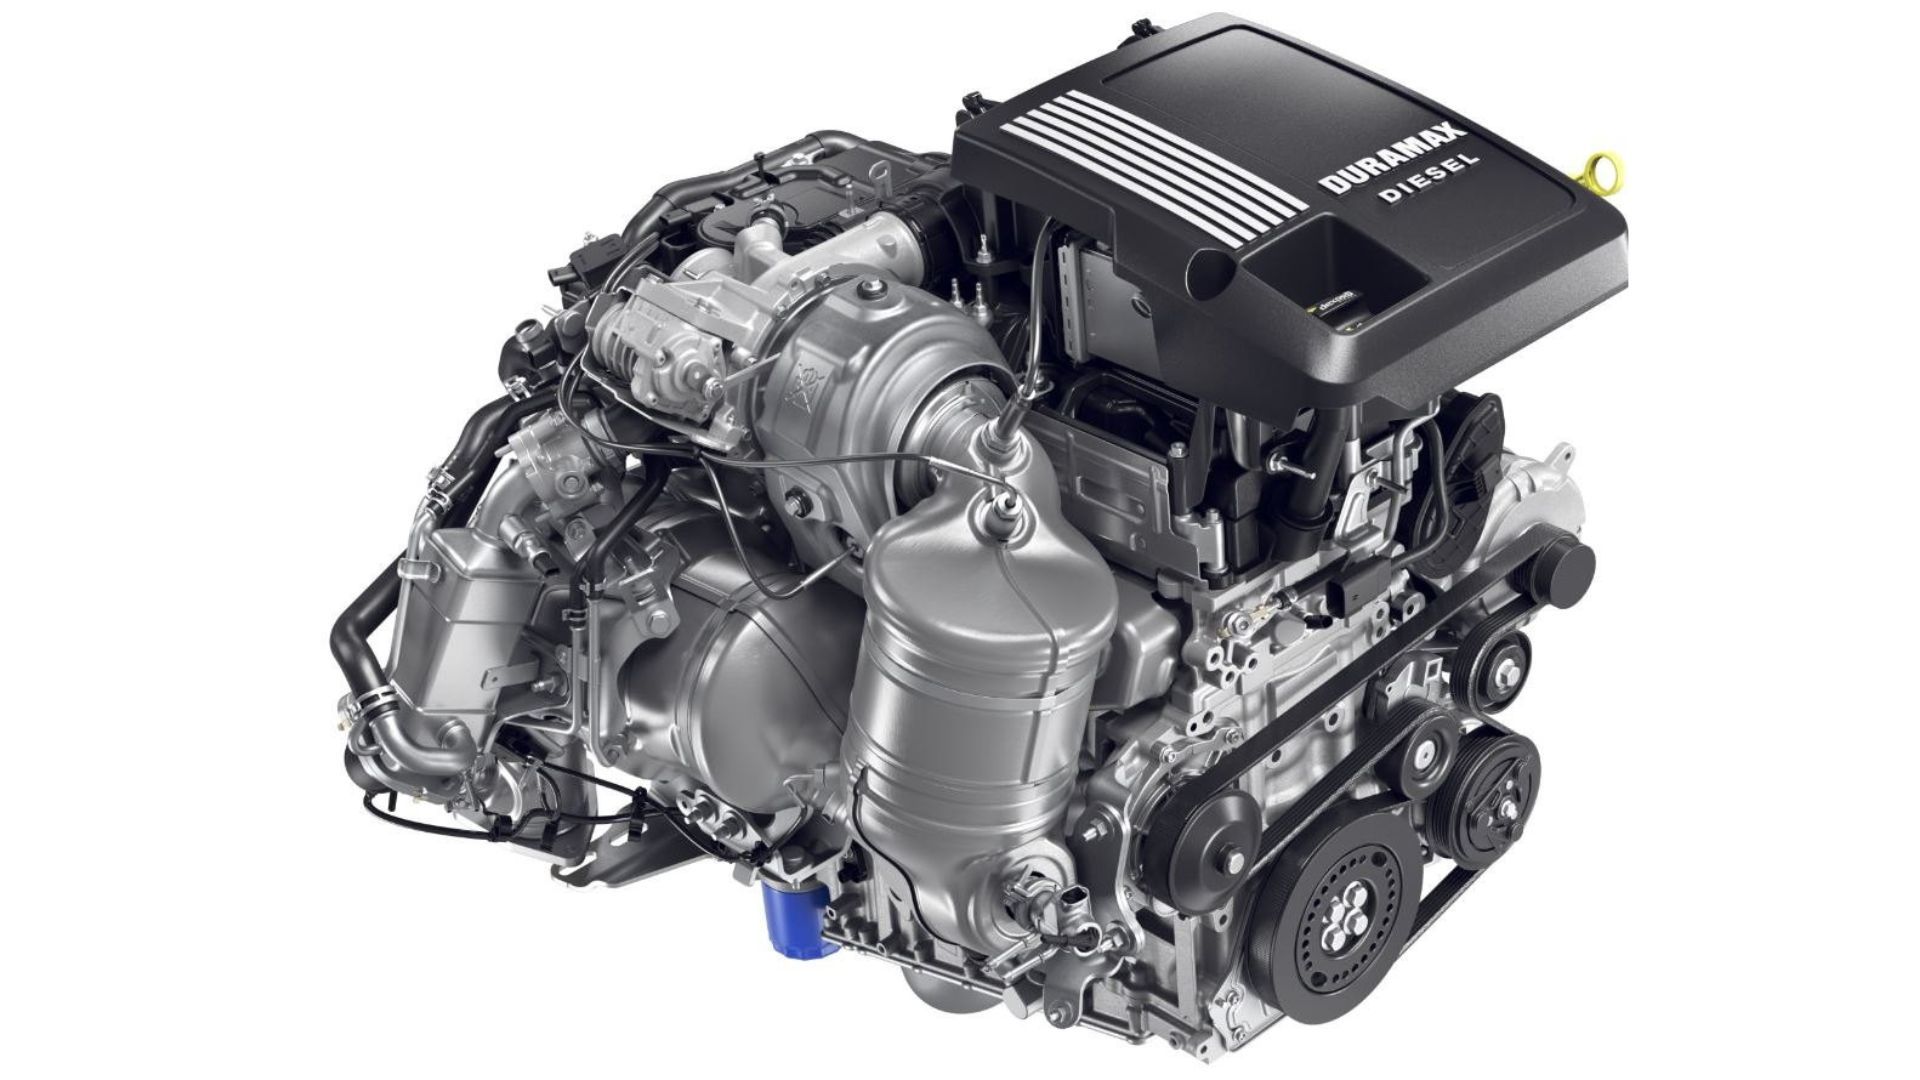 3.0-liter Duramax Turbo-Diesel engine